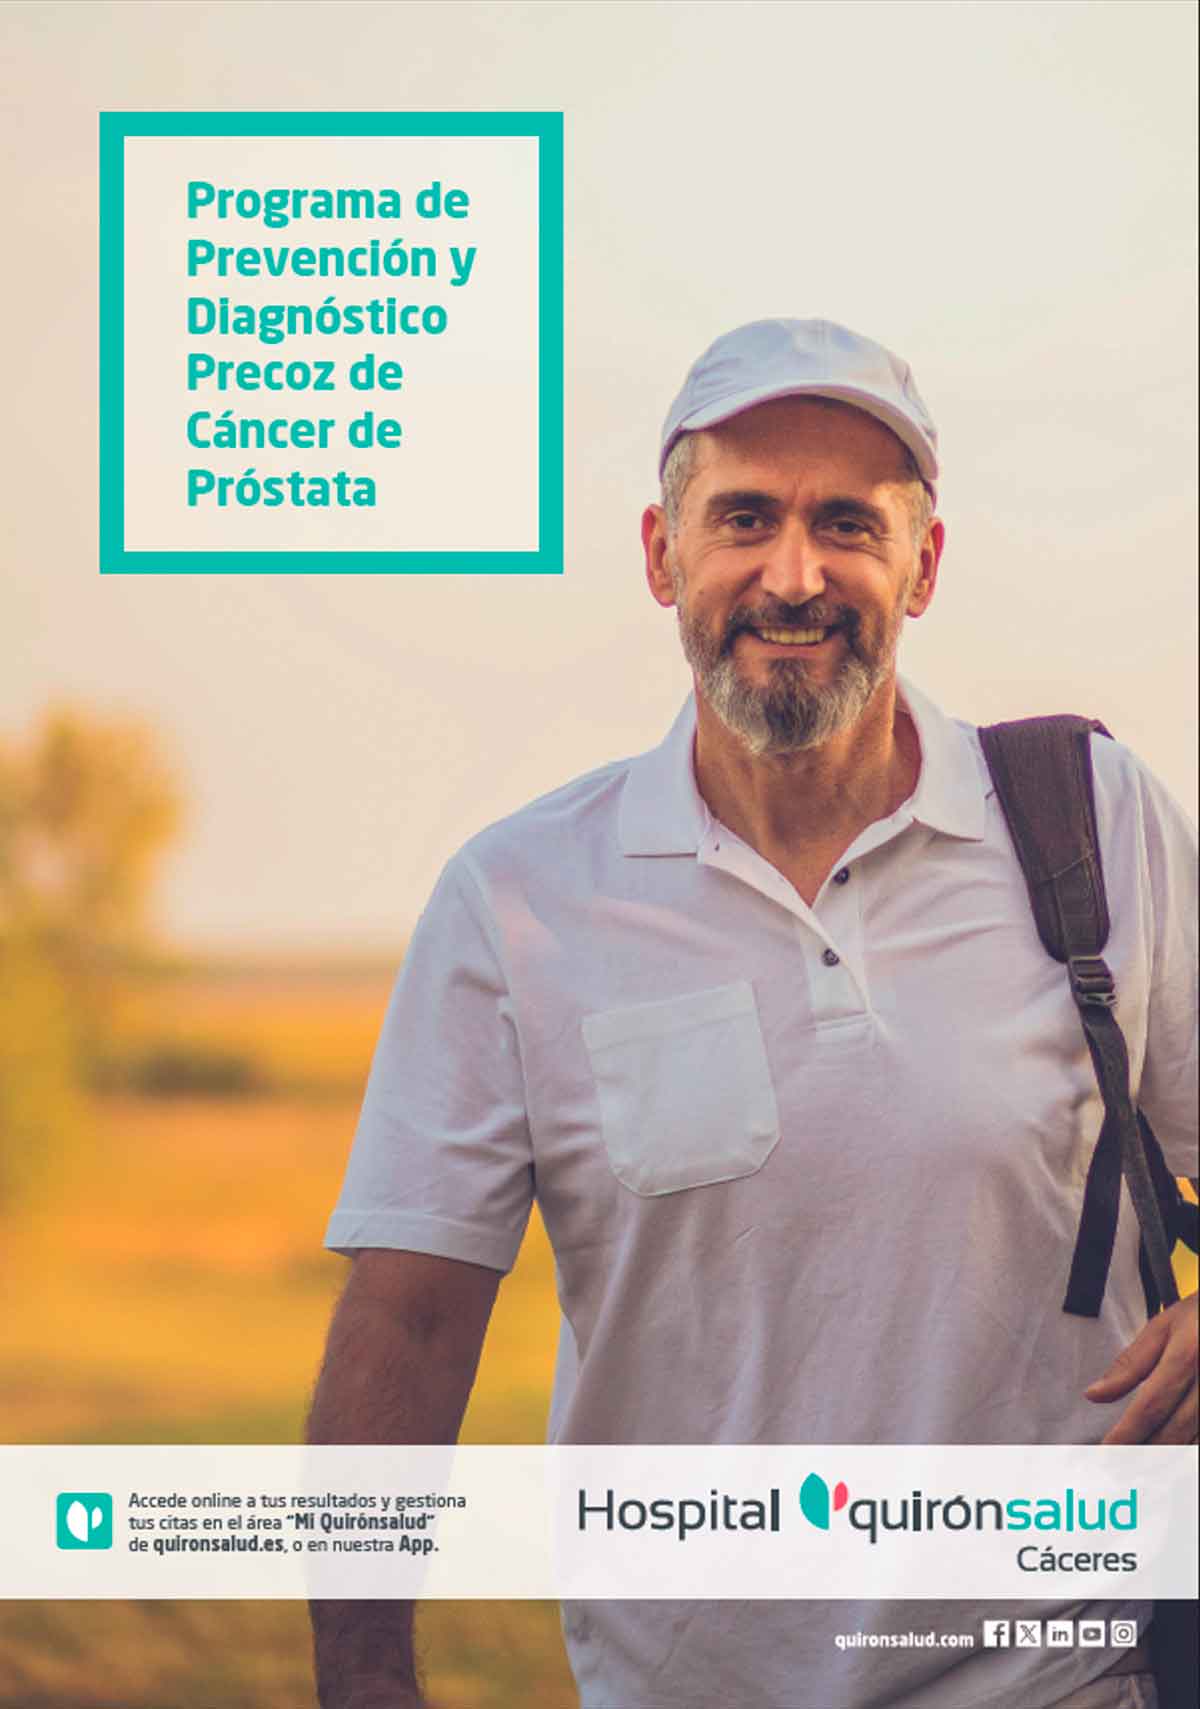 programa-de-detección-del-cáncer-de-próstata-del-hospital-quironsalud-caceres